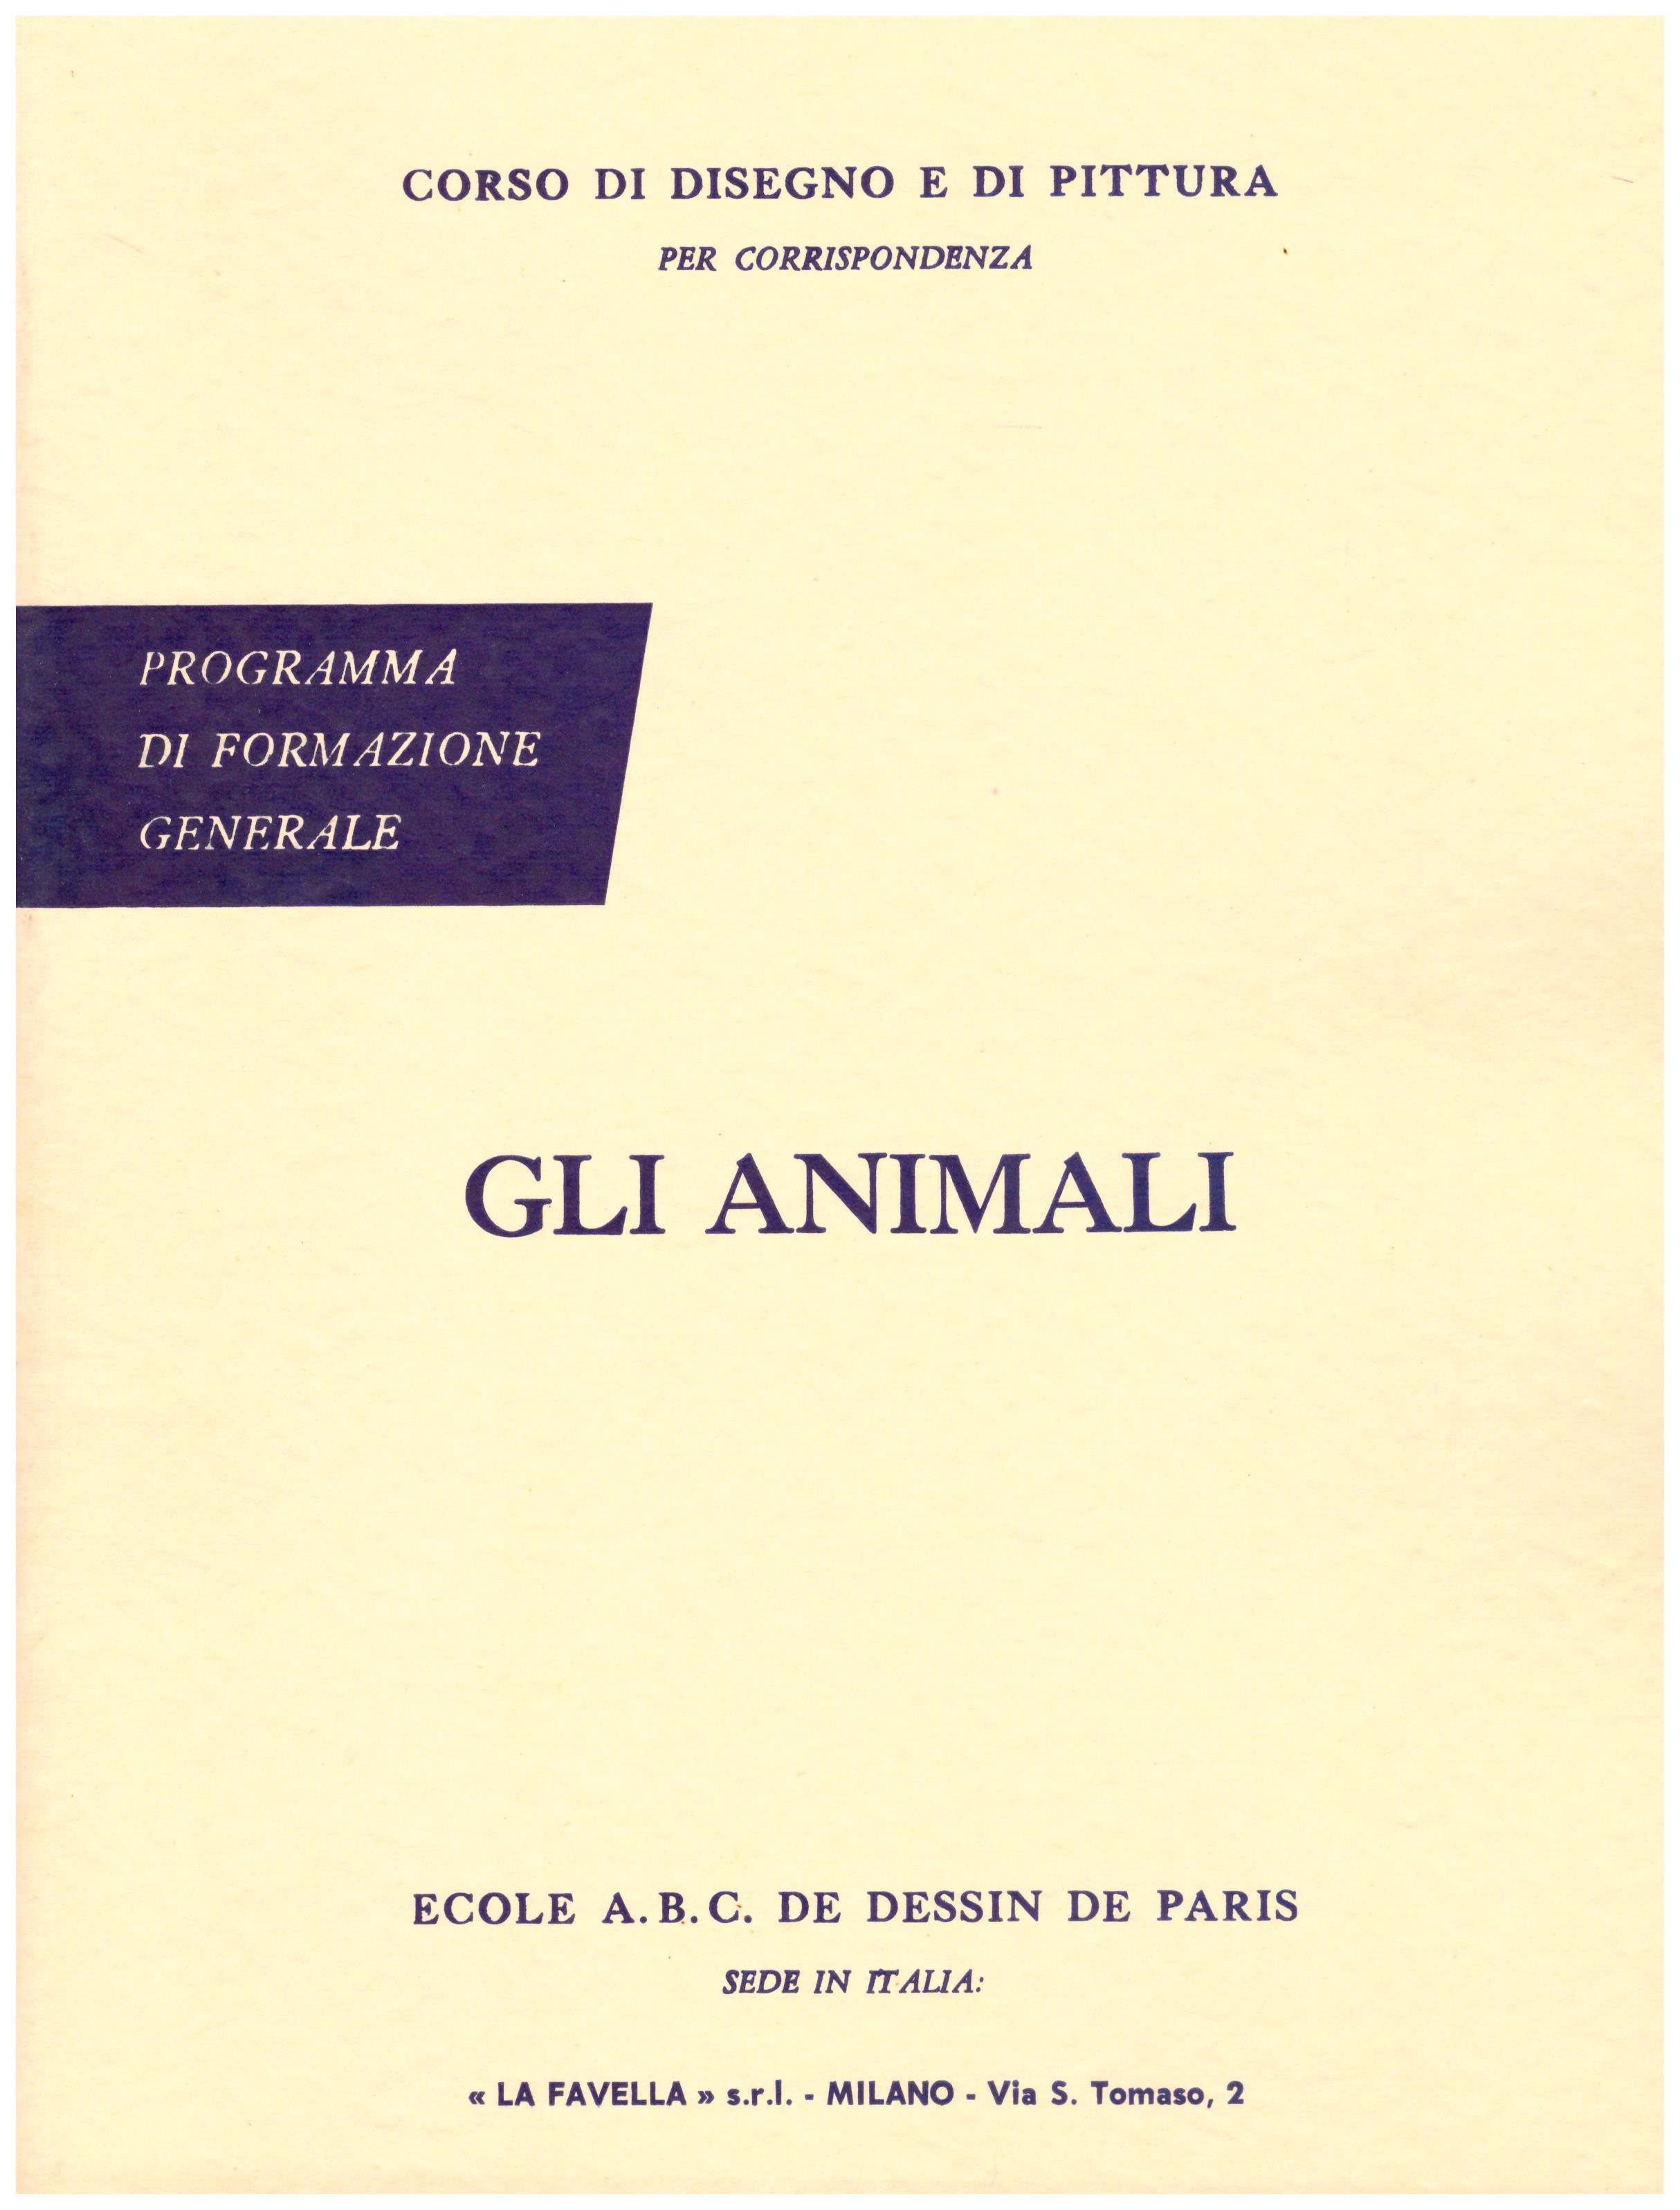 Titolo: Corso di disegno e pittura, gli animali Autore: AA.VV.  Editore: Ecole A.B.C. de dessin de Paris sede in Italia: La Favella, Milano 1962